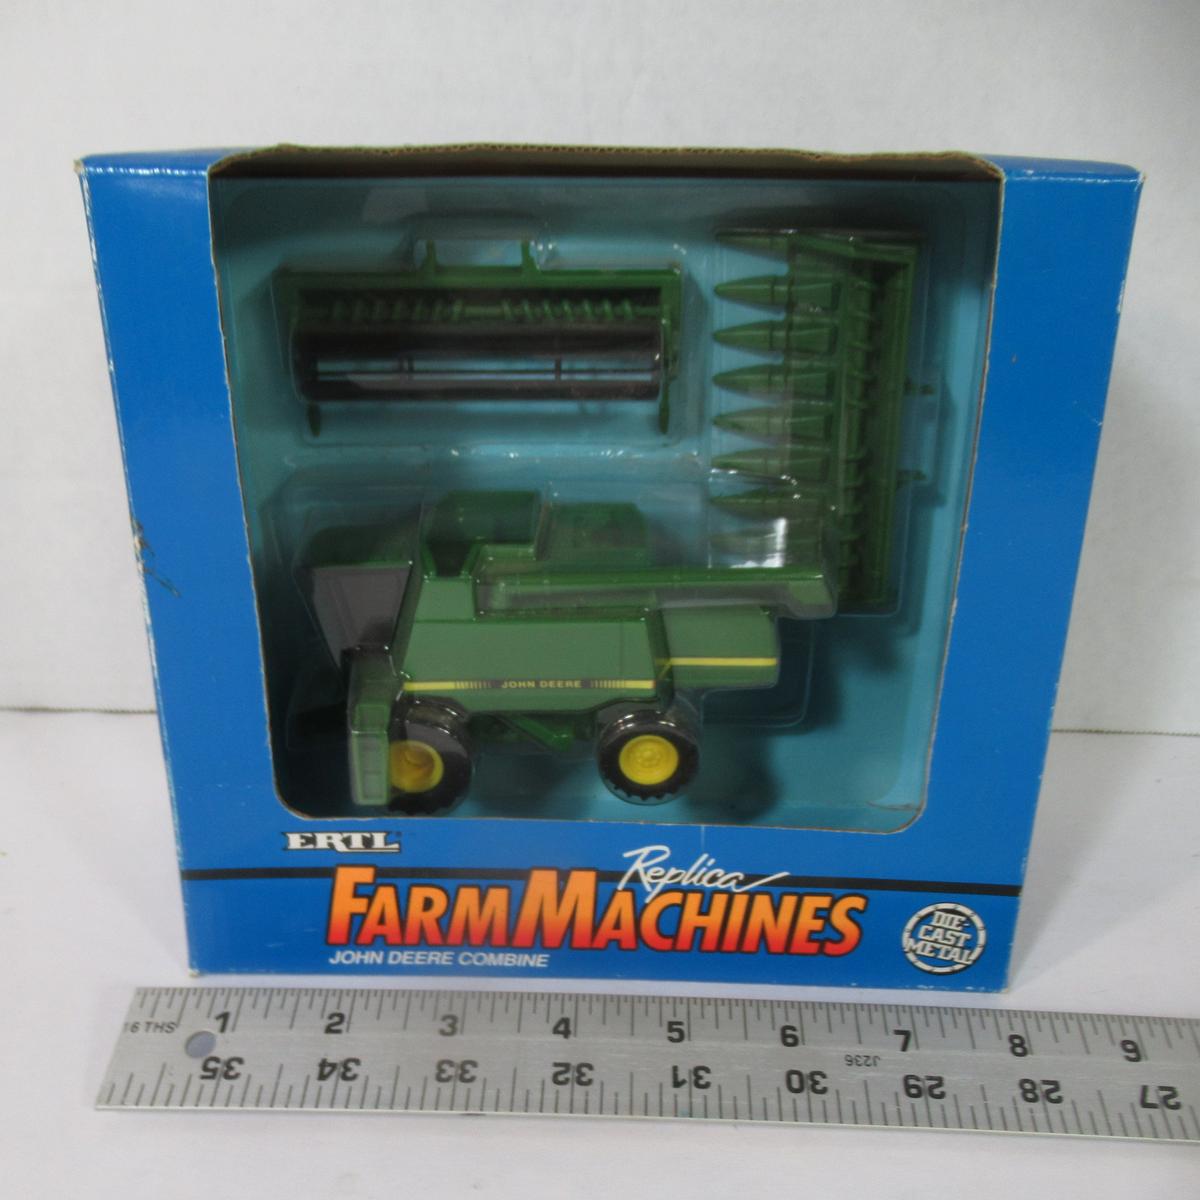 John Deere Farm Combine 1/16 Scale Die Cast Toy by ERTL - New in Box